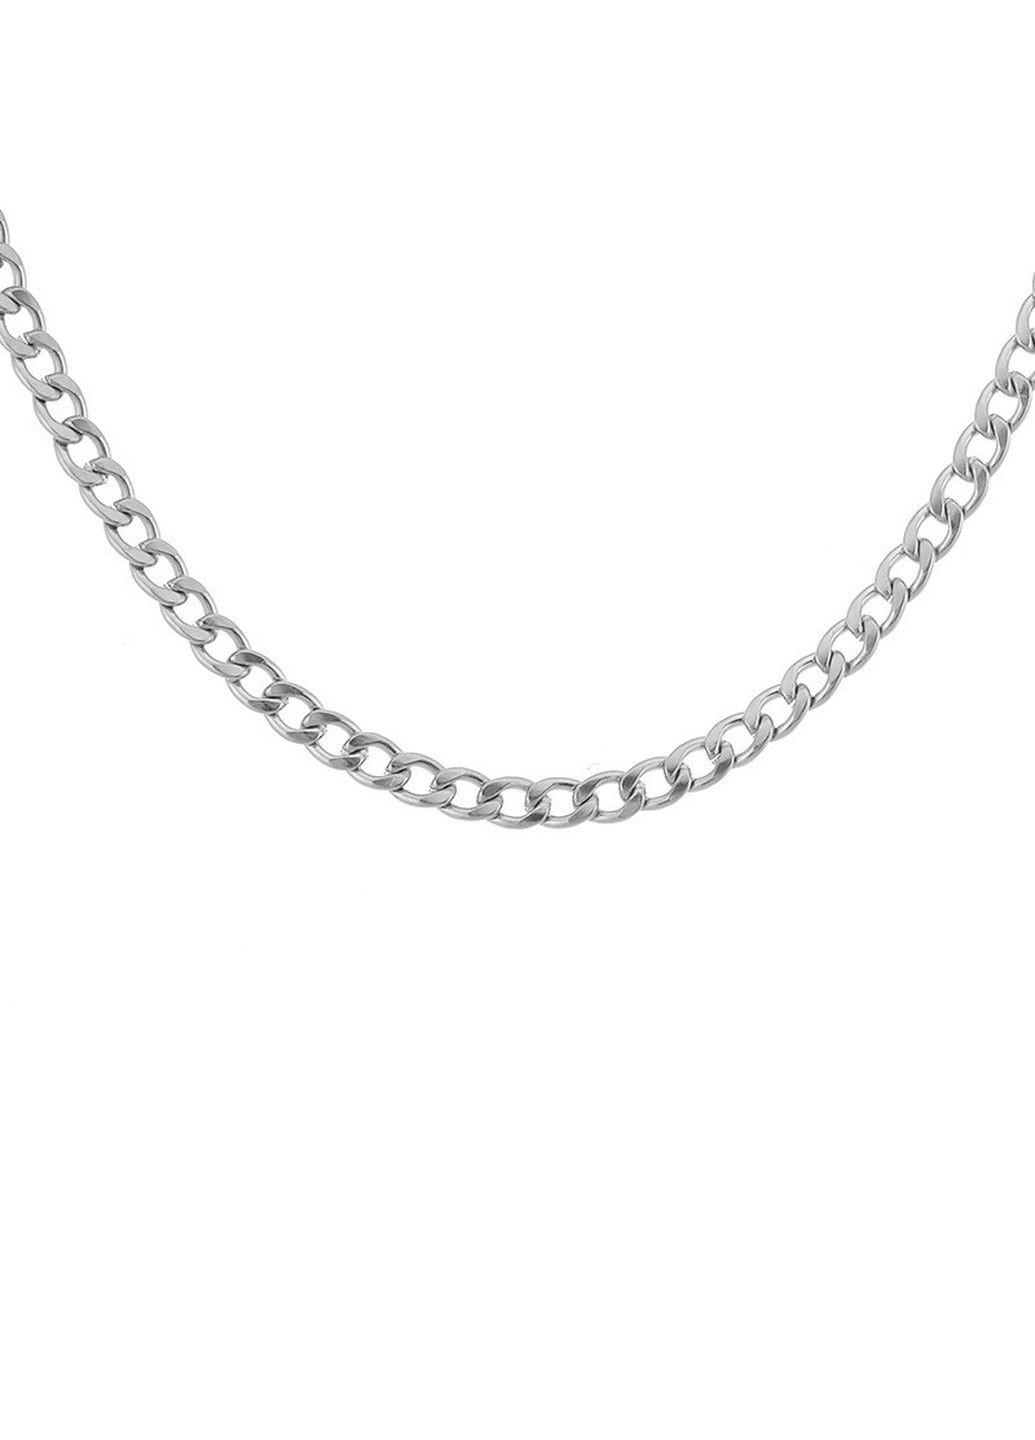 Широкая серебряная цепочка мужская 50см/6мм цепь на шею Ц-1 Mira (289870002)